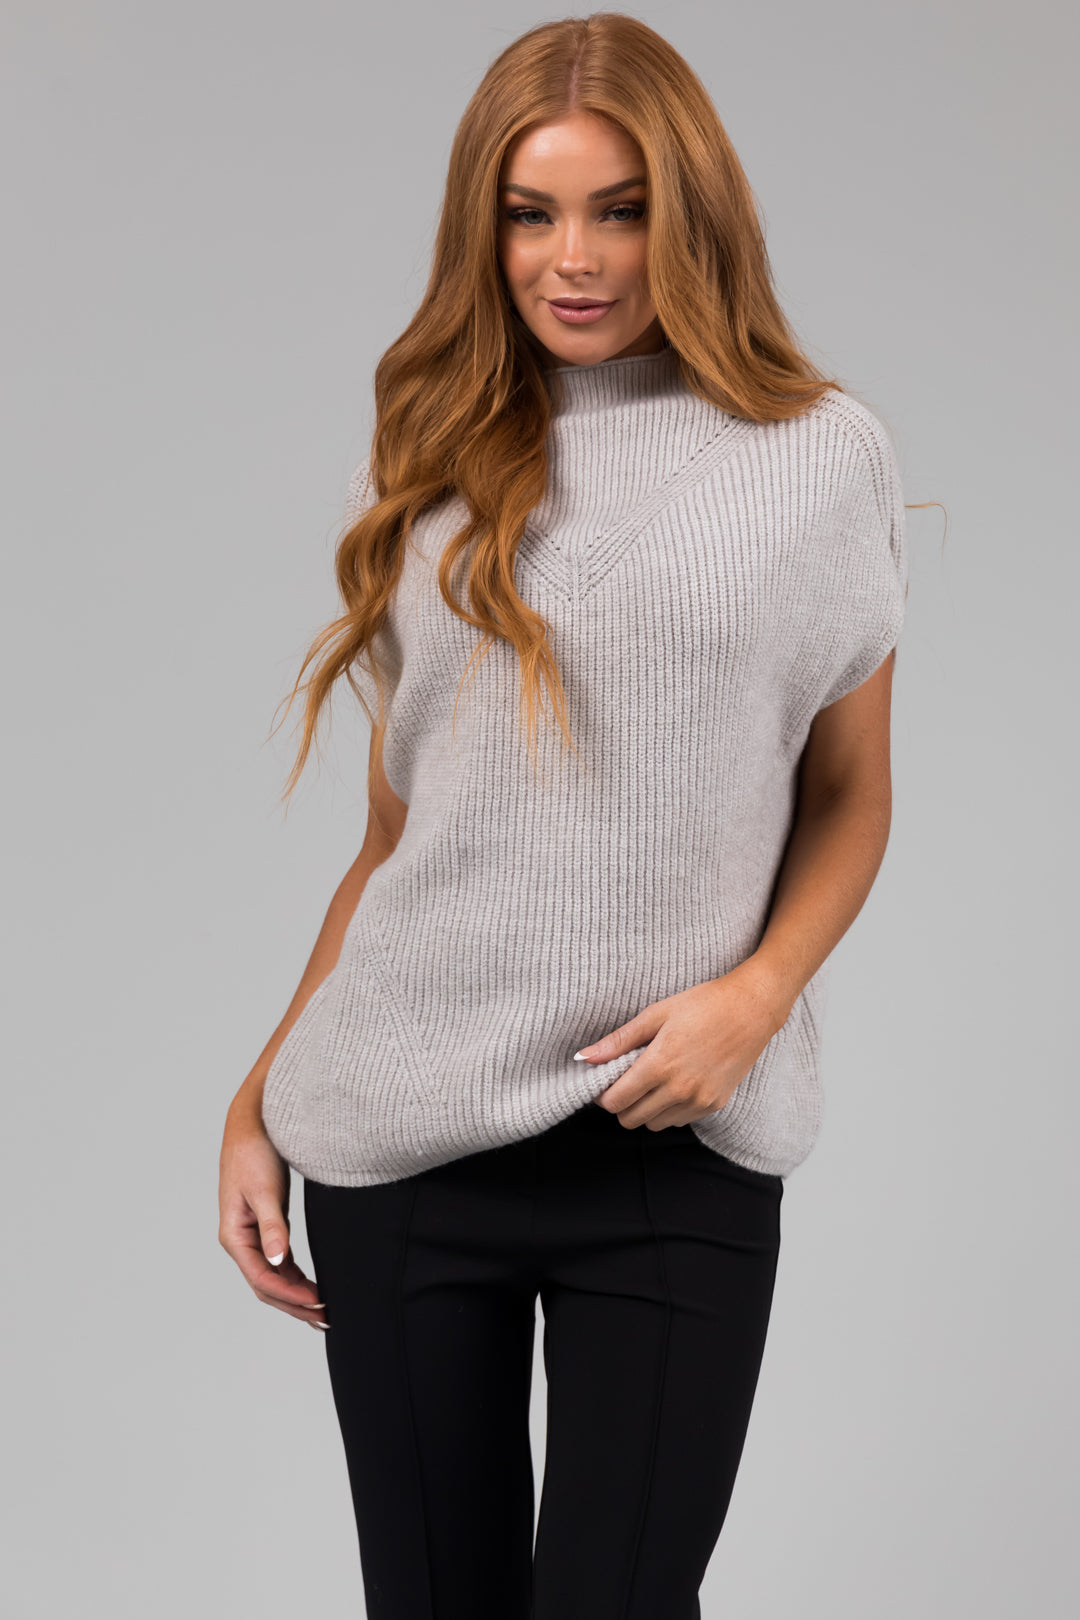 Heather Grey Mock Neck Stretchy Knit Sweater Vest